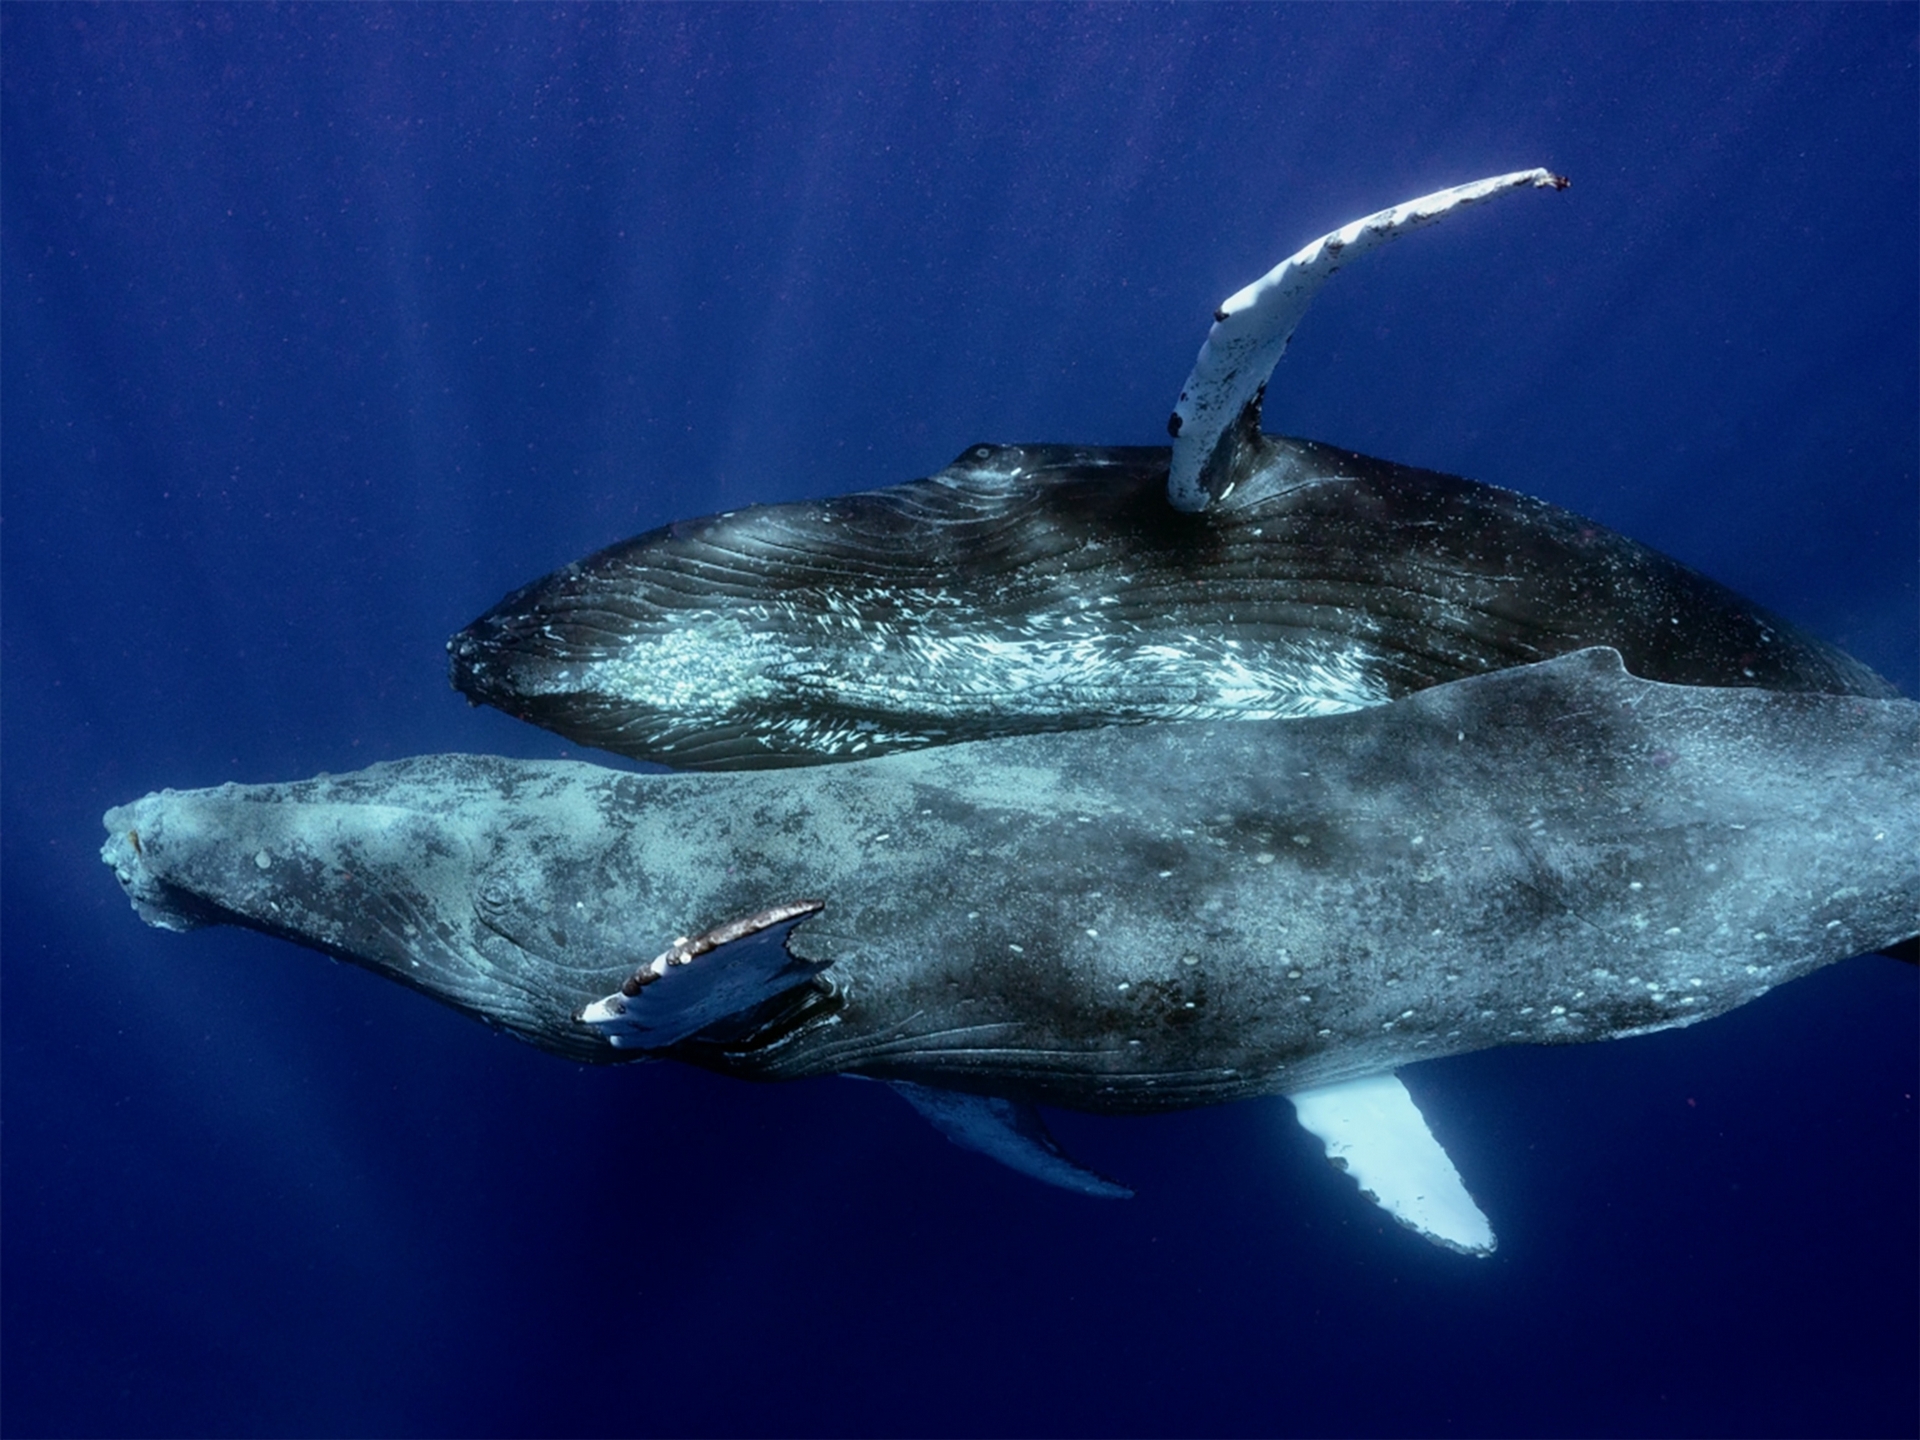 專家還不清楚為什麼兩隻雄性會交配，猜測可能是座頭鯨Ｂ（上方）試圖安慰生病、下巴疑似受傷的座頭鯨Ａ。PHOTOGRAPH BY LYLE KRANNICHFELD AND BRANDI ROMANO